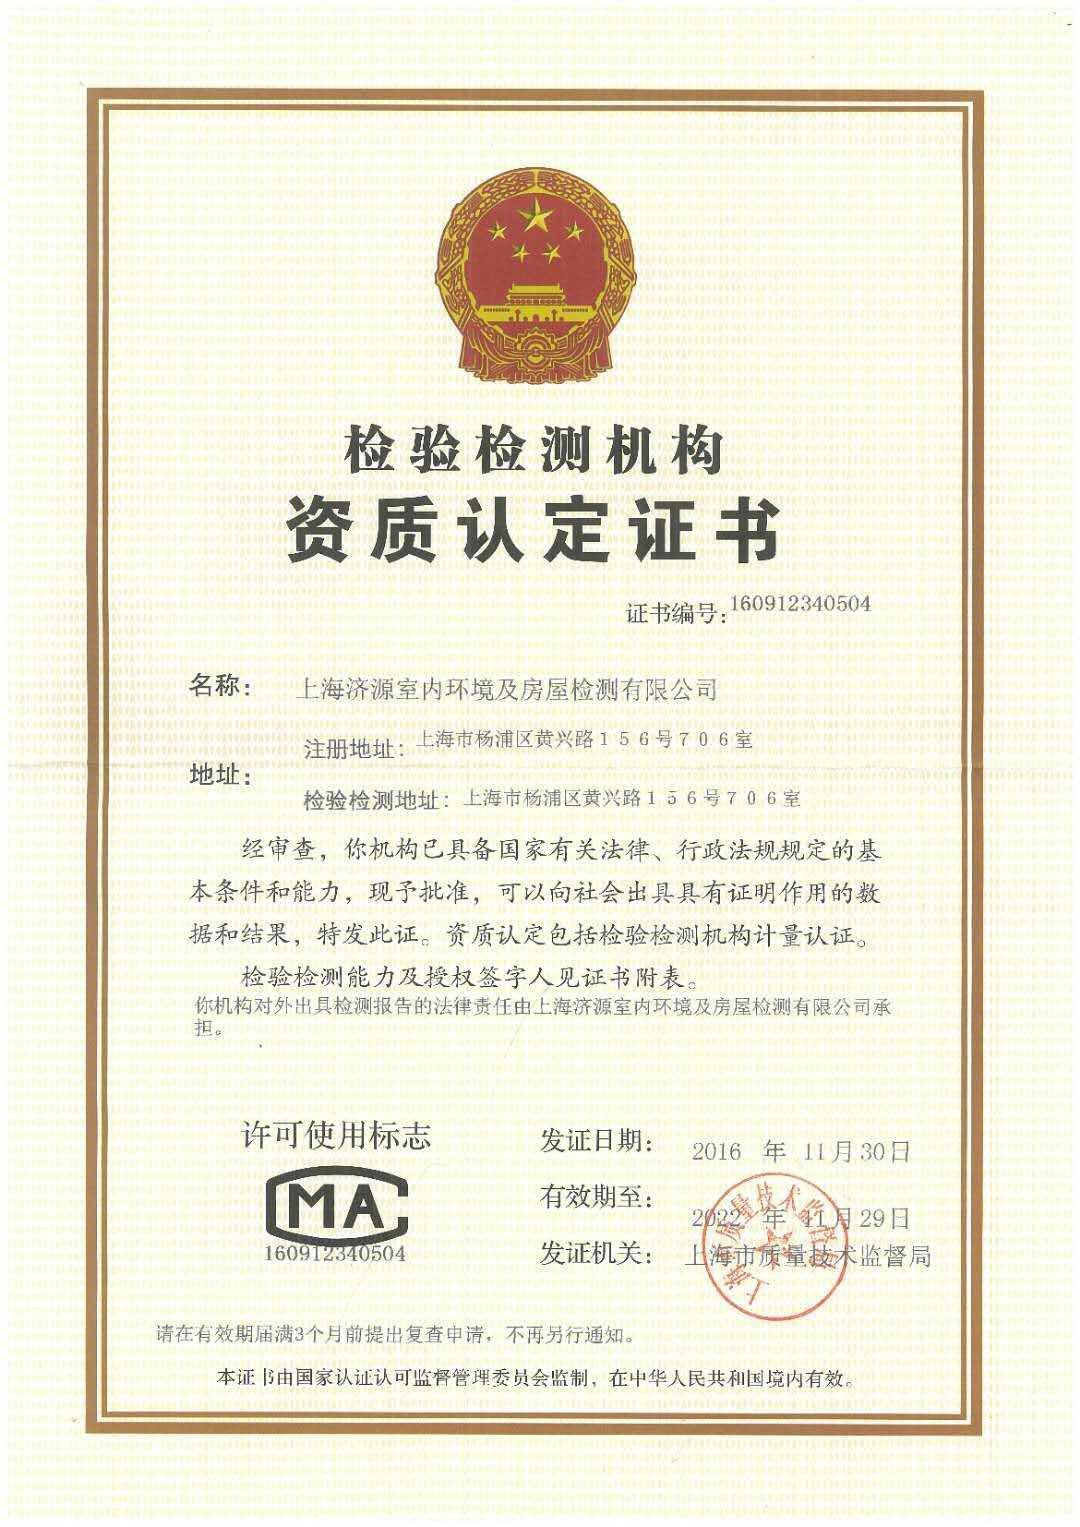 上海济源室内环境及房屋检测有限公司